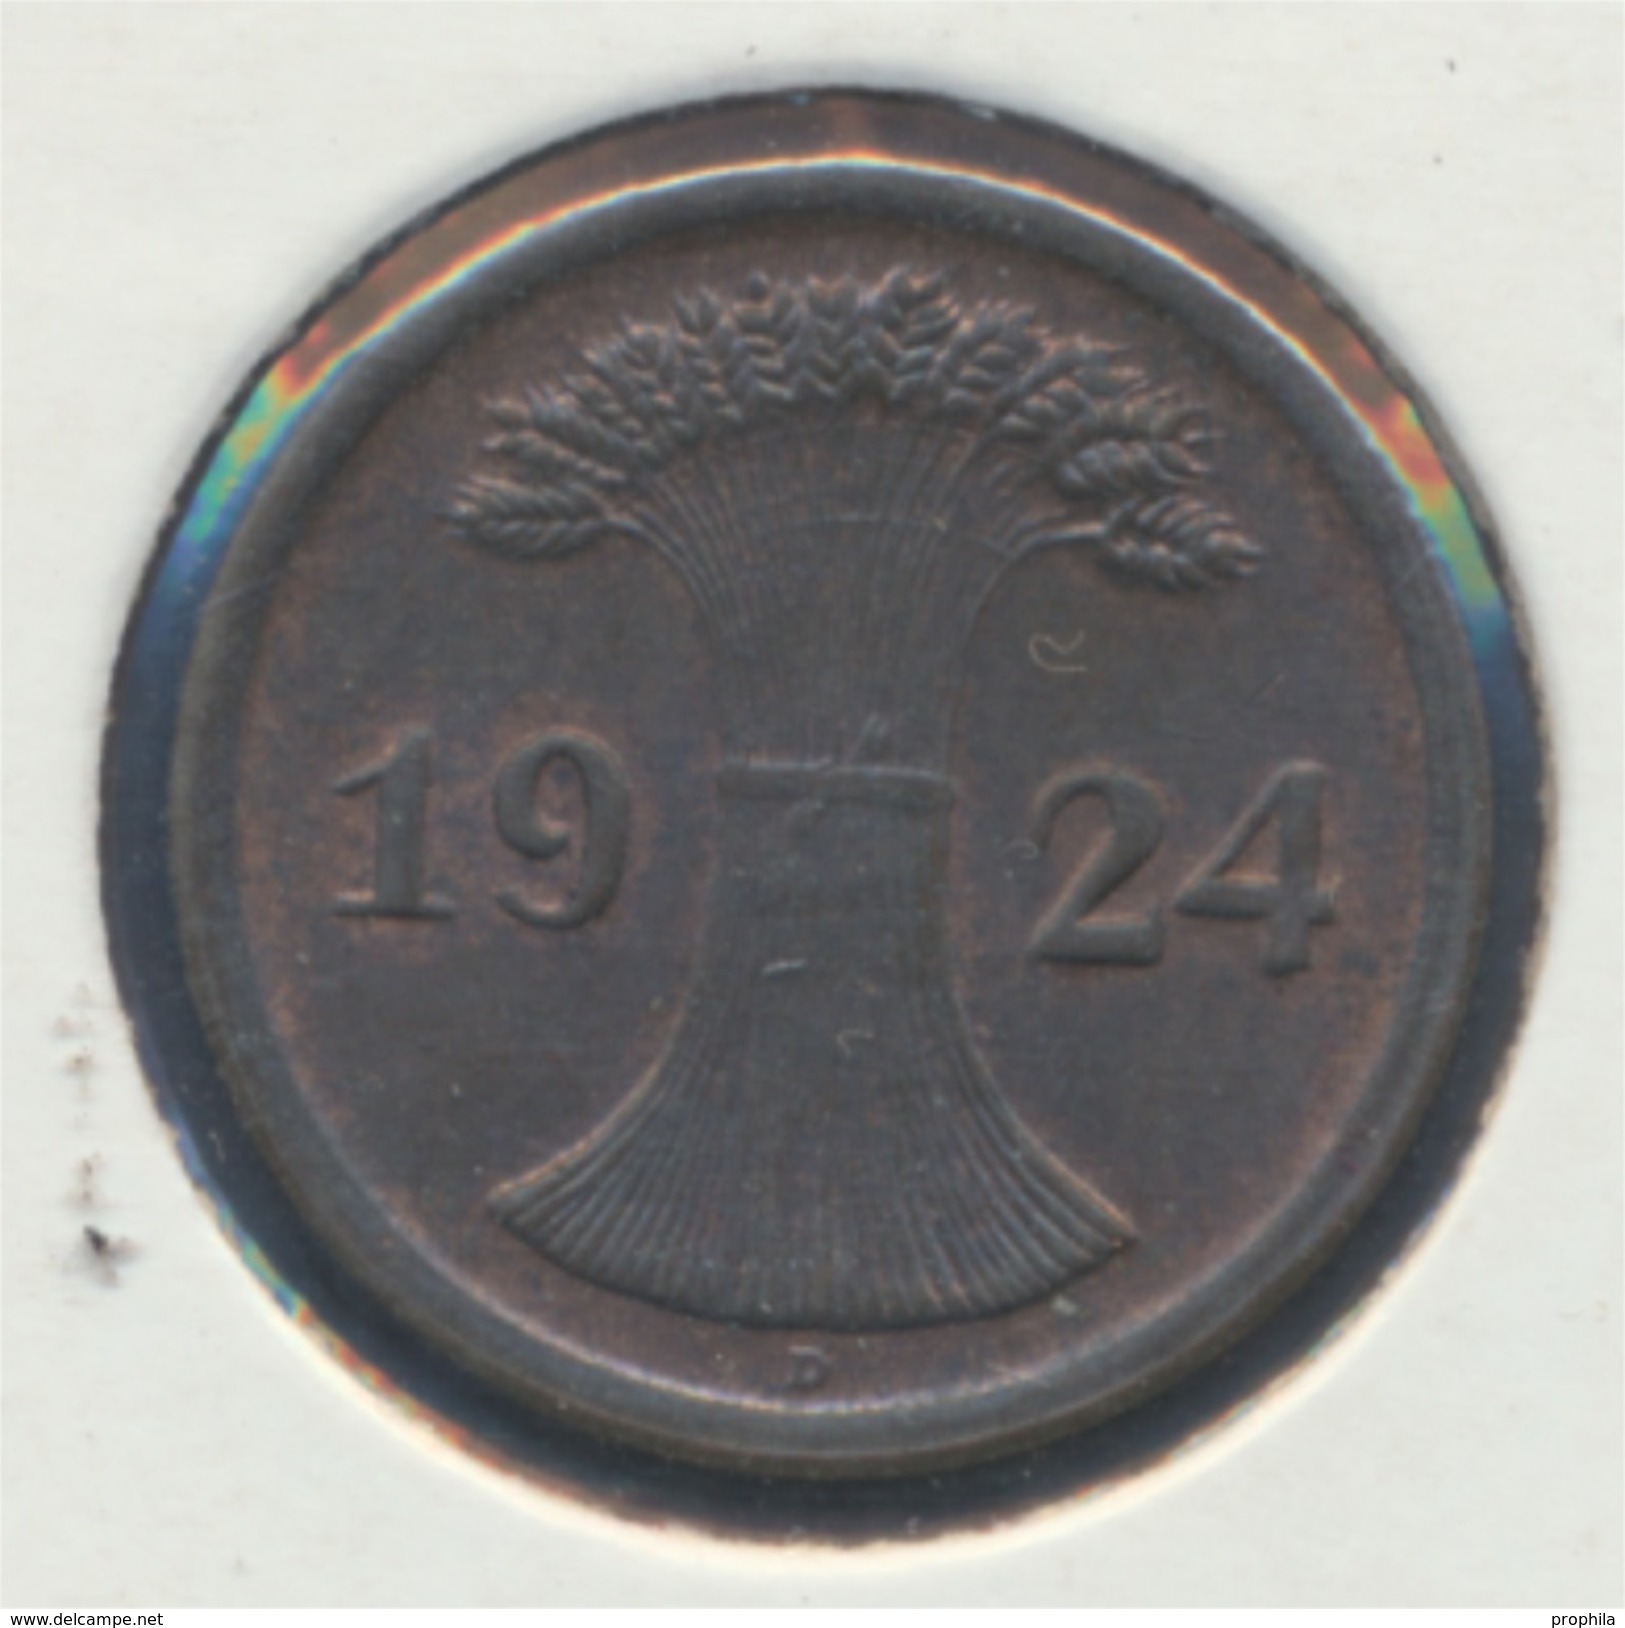 Deutsches Reich Jägernr: 307 1924 D Stgl./unzirkuliert Bronze 1924 2 Rentenpfennig Ährengarbe (7869109 - 2 Renten- & 2 Reichspfennig